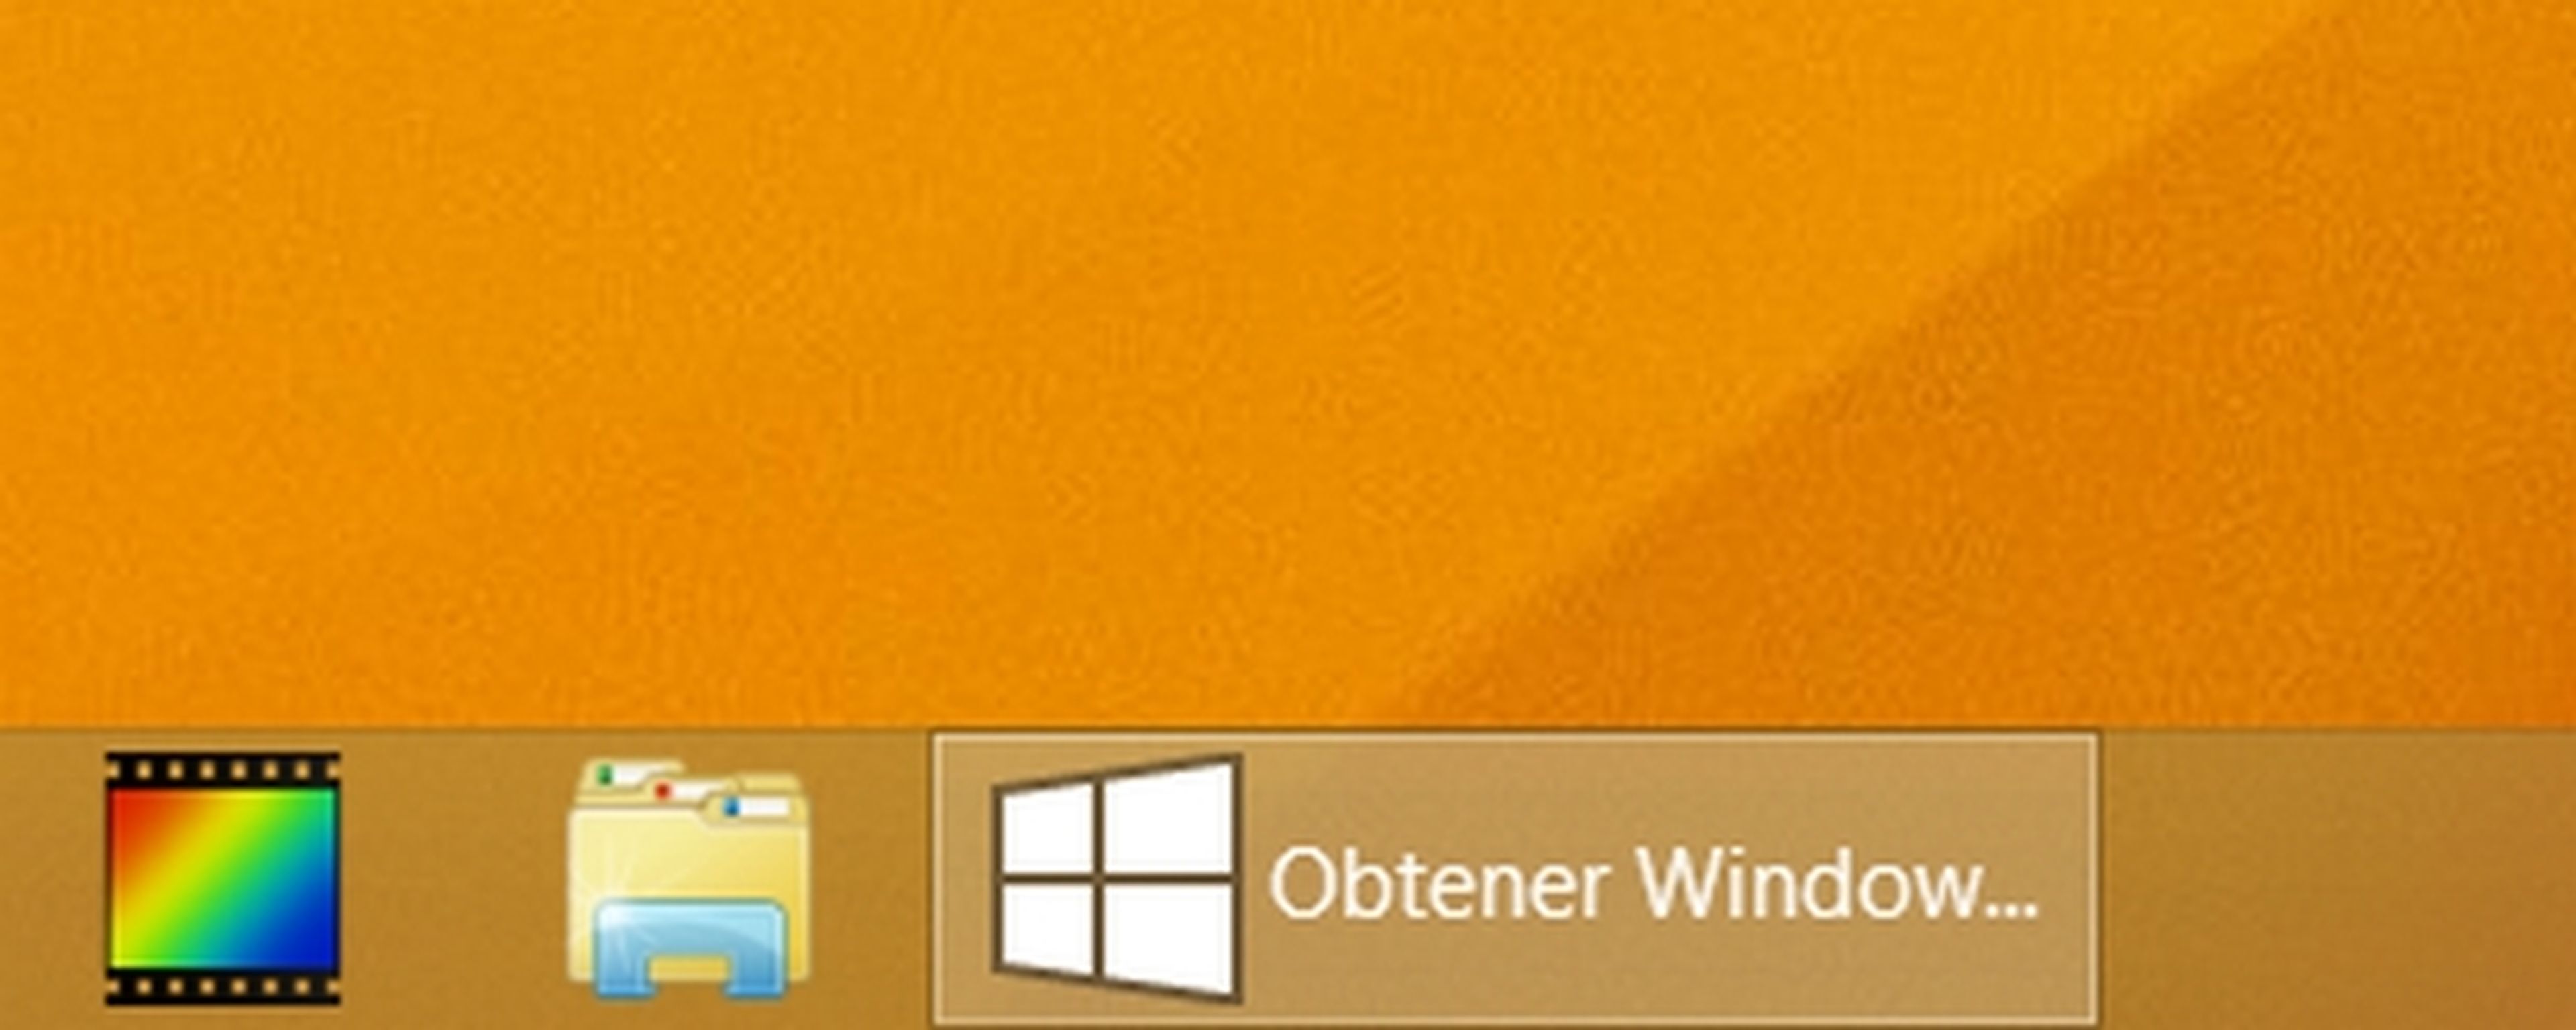 ¿Qué sucede si no reservas la actualización de Windows 10?